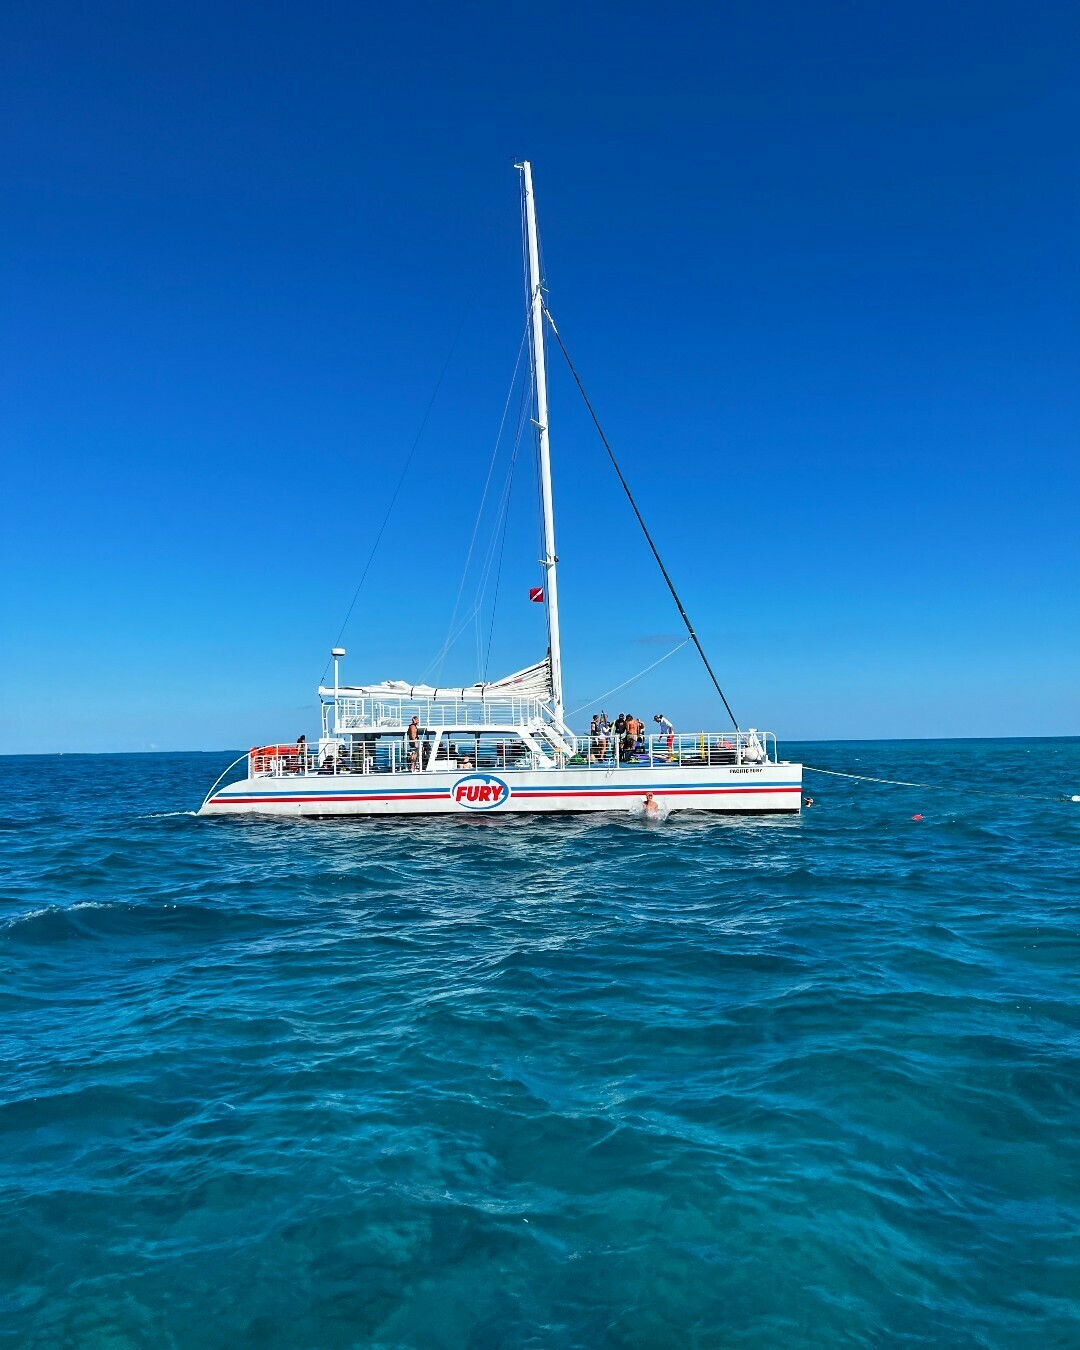 Fury Water Adventures Key West